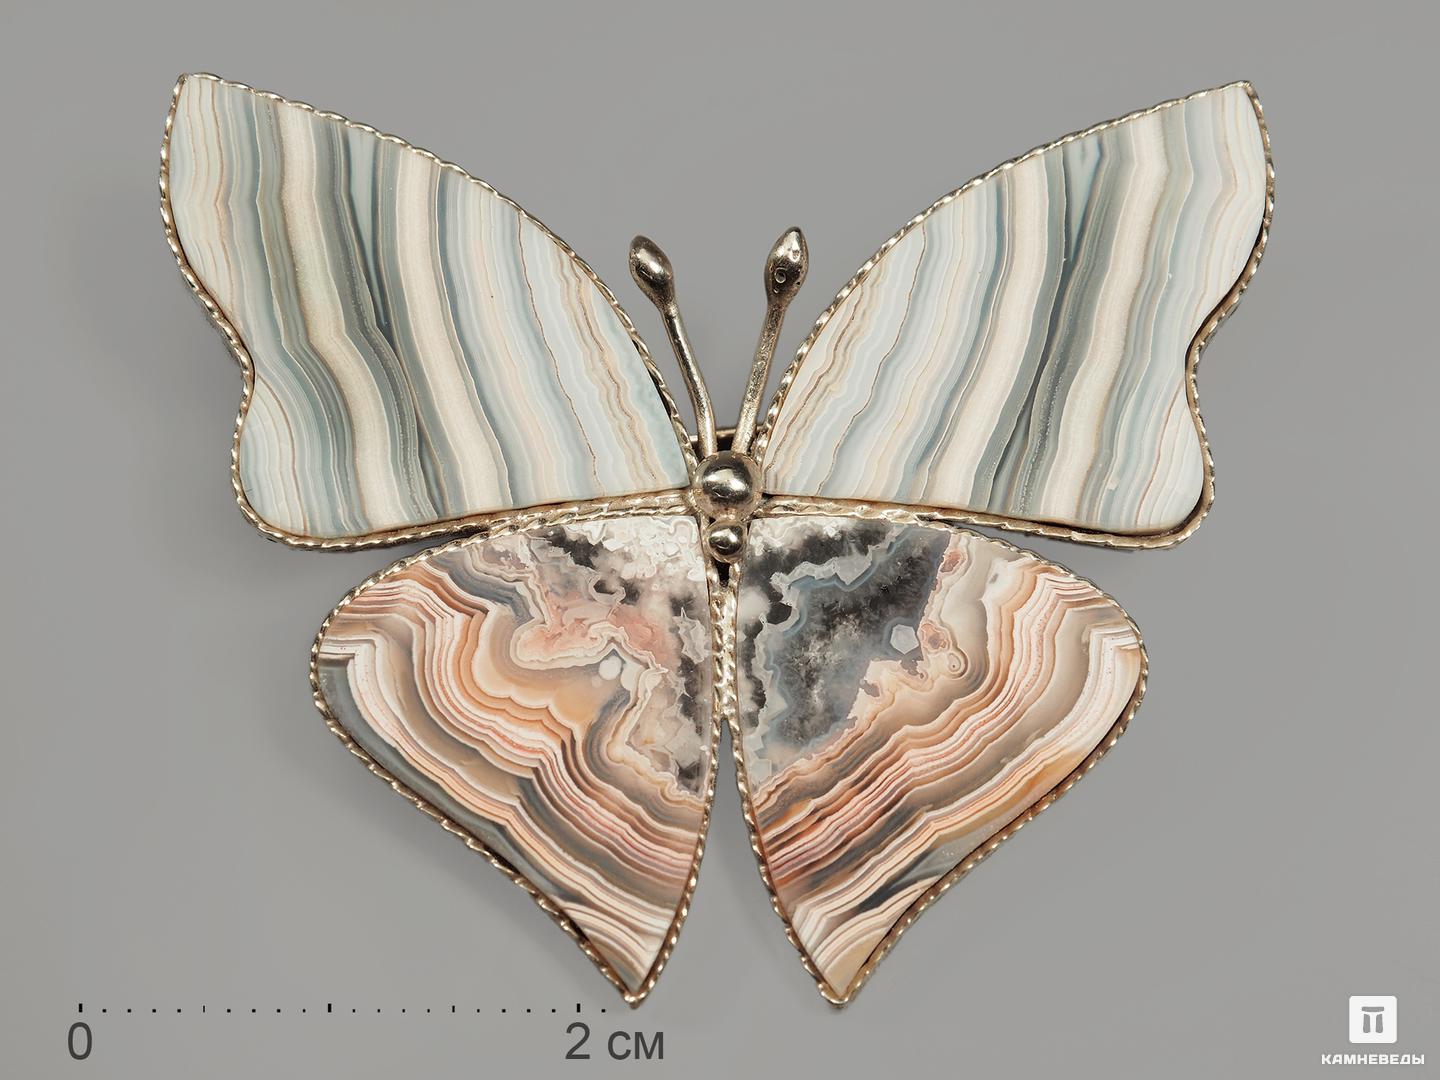 Брошь «Бабочка» с кружевным агатом, 4,4х3,7 см, 9623, фото 1